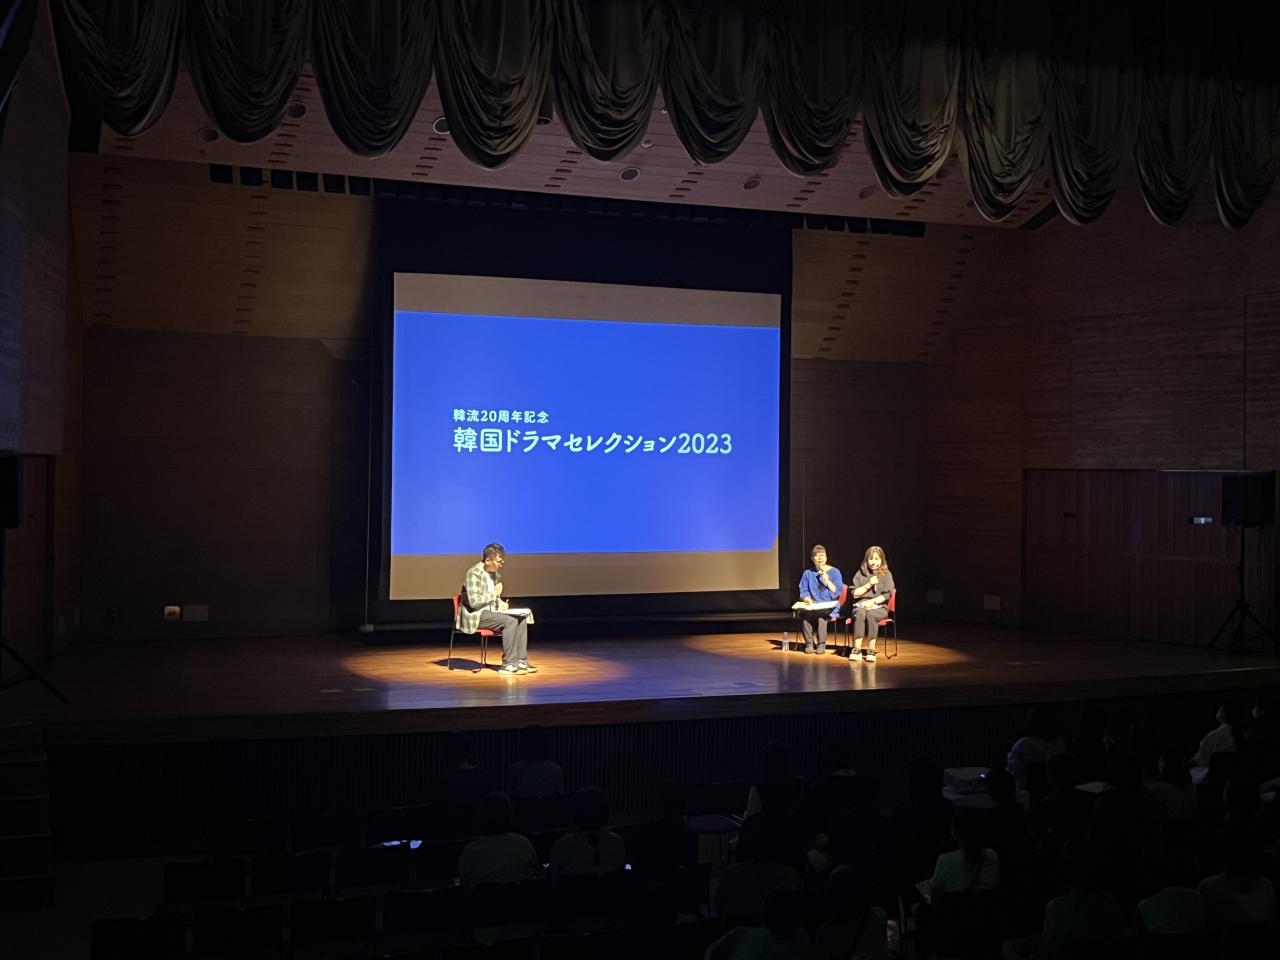 ‘한국드라마셀렉션 2023’ 가가와현 다카마쓰 상영회에서 ‘현재는 아름다워’의 극본을 집필한 하명희 작가가 토크쇼 세션에 참가해 발표하고 있다.